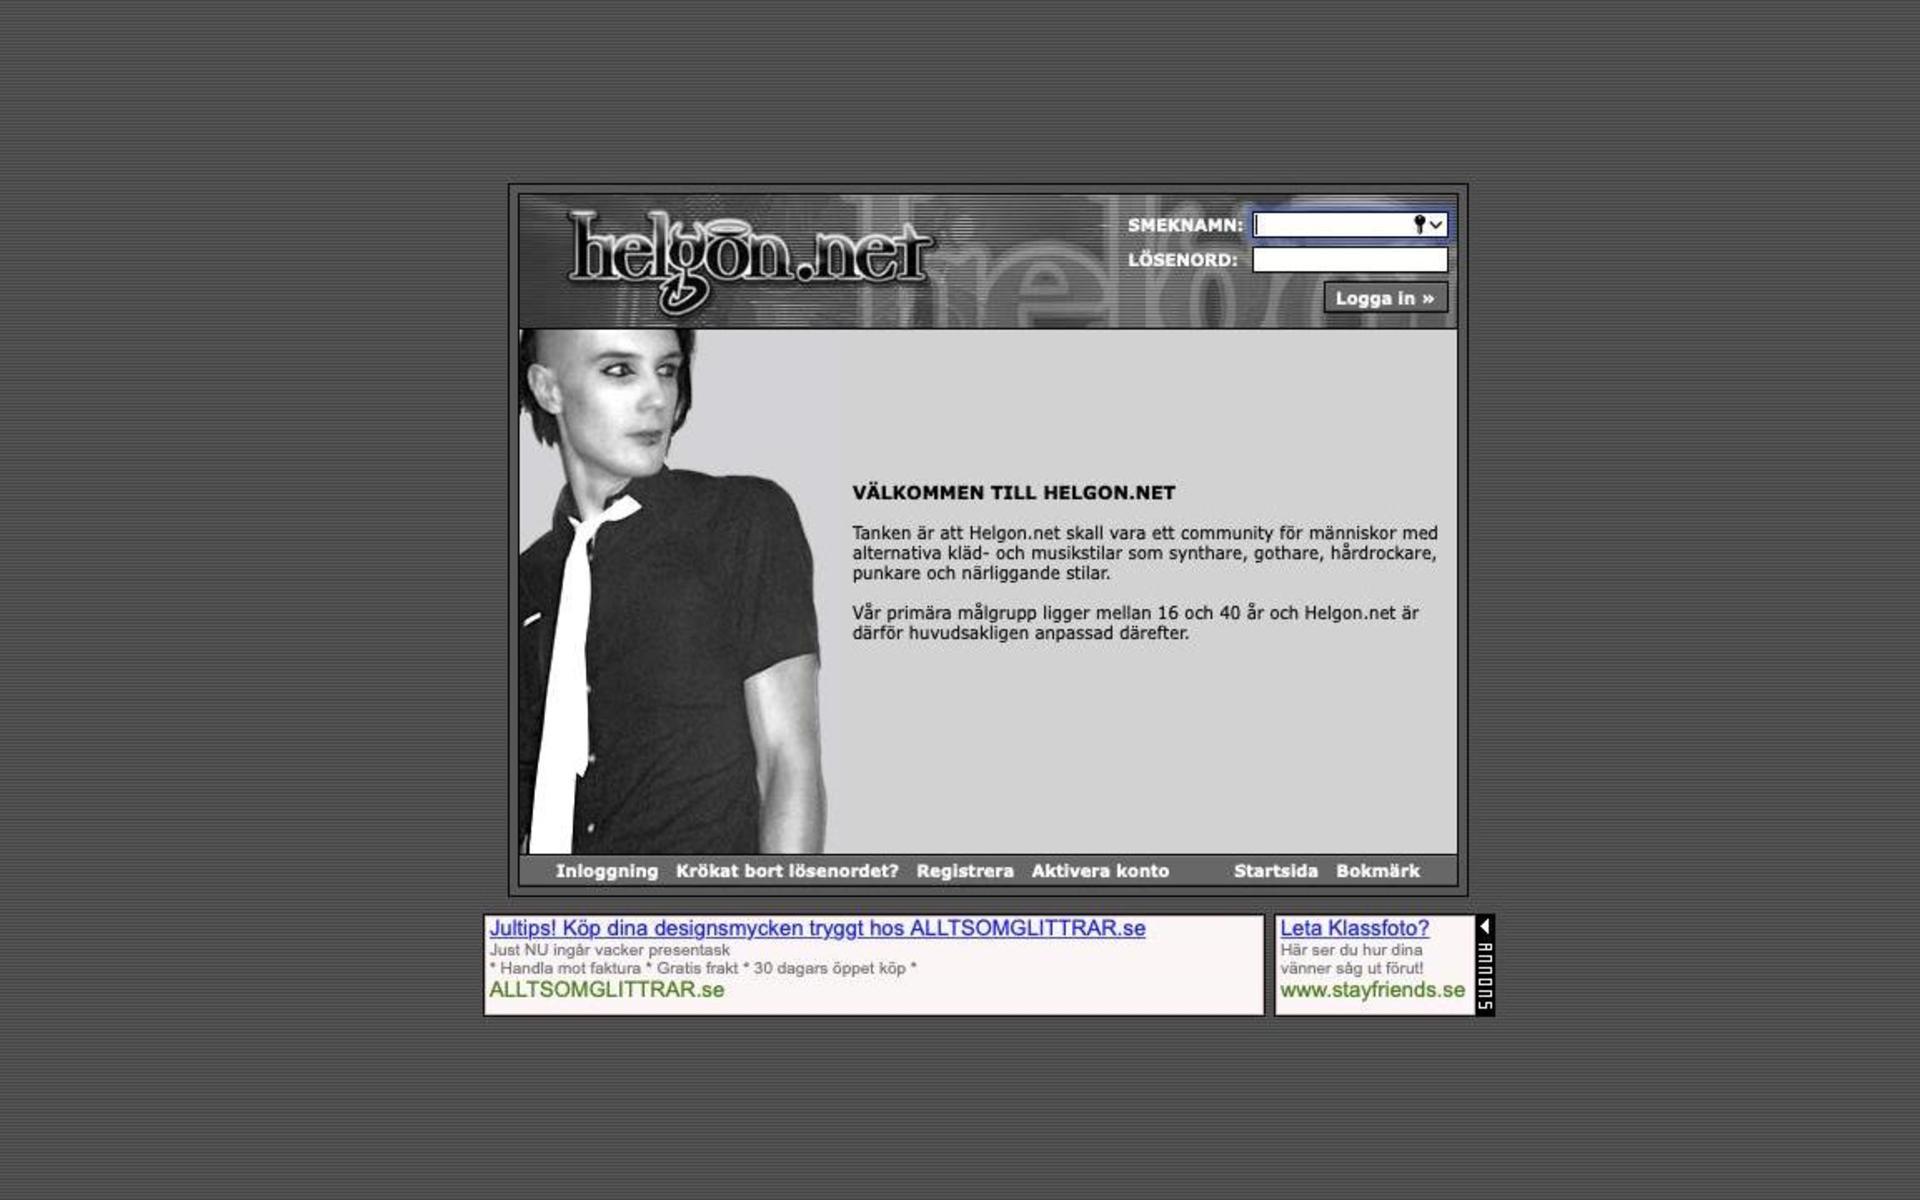 Helgon.net startar 2002 och är ett community för människor med alternativa kläd- och musikstilar som synthare, gothare, hårdrockare och punkare. Som mest har de 200 000 användare och åldersgruppen är tonåringar upp till 40-åringar. Det går inte att spionera på andras profilsidor eftersom varje profil har en egen besöksräknare där det går att kolla vem som varit inne och tittat.